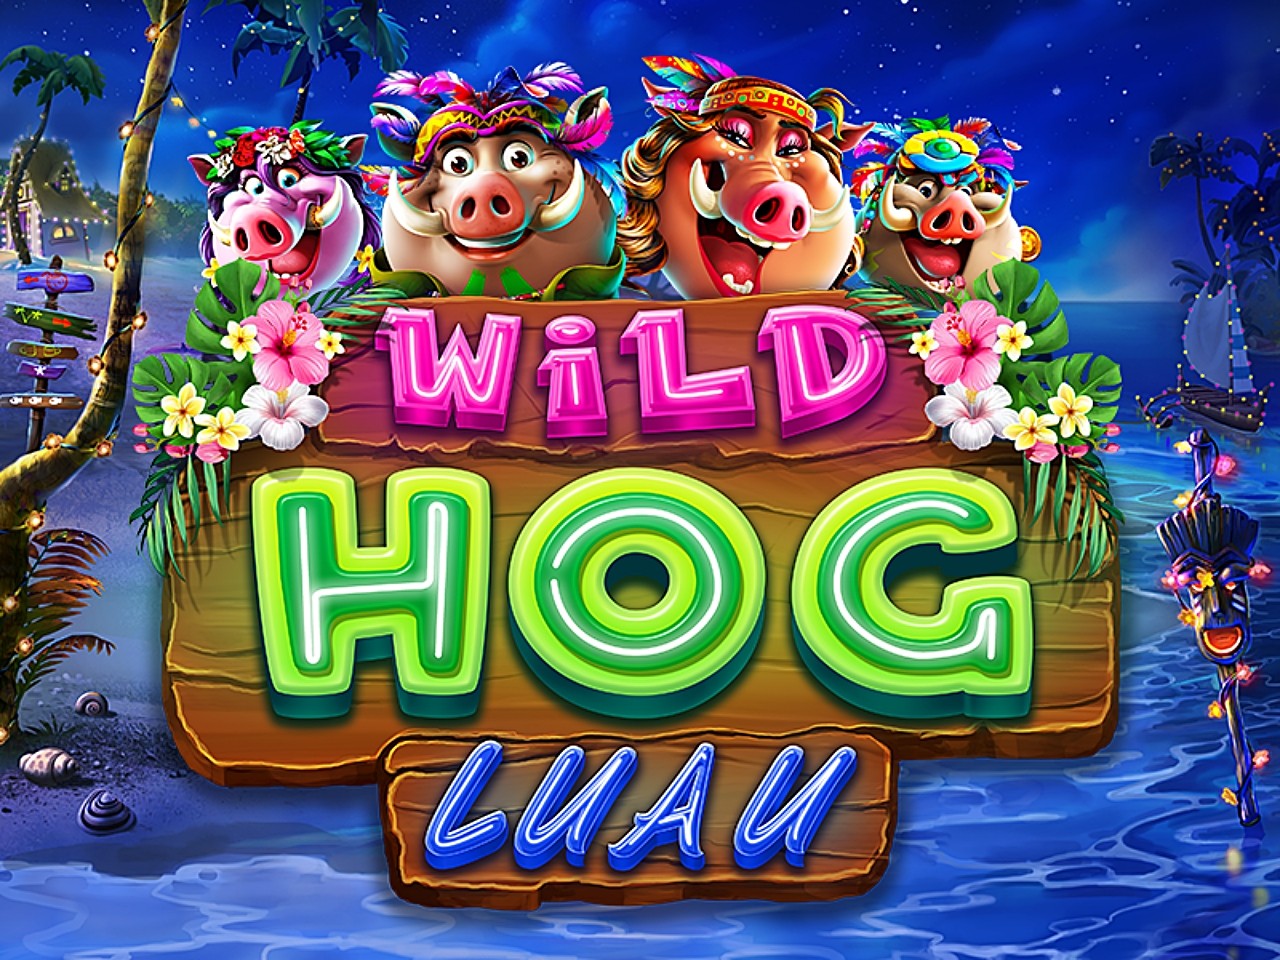 Wild Hog Luau slot